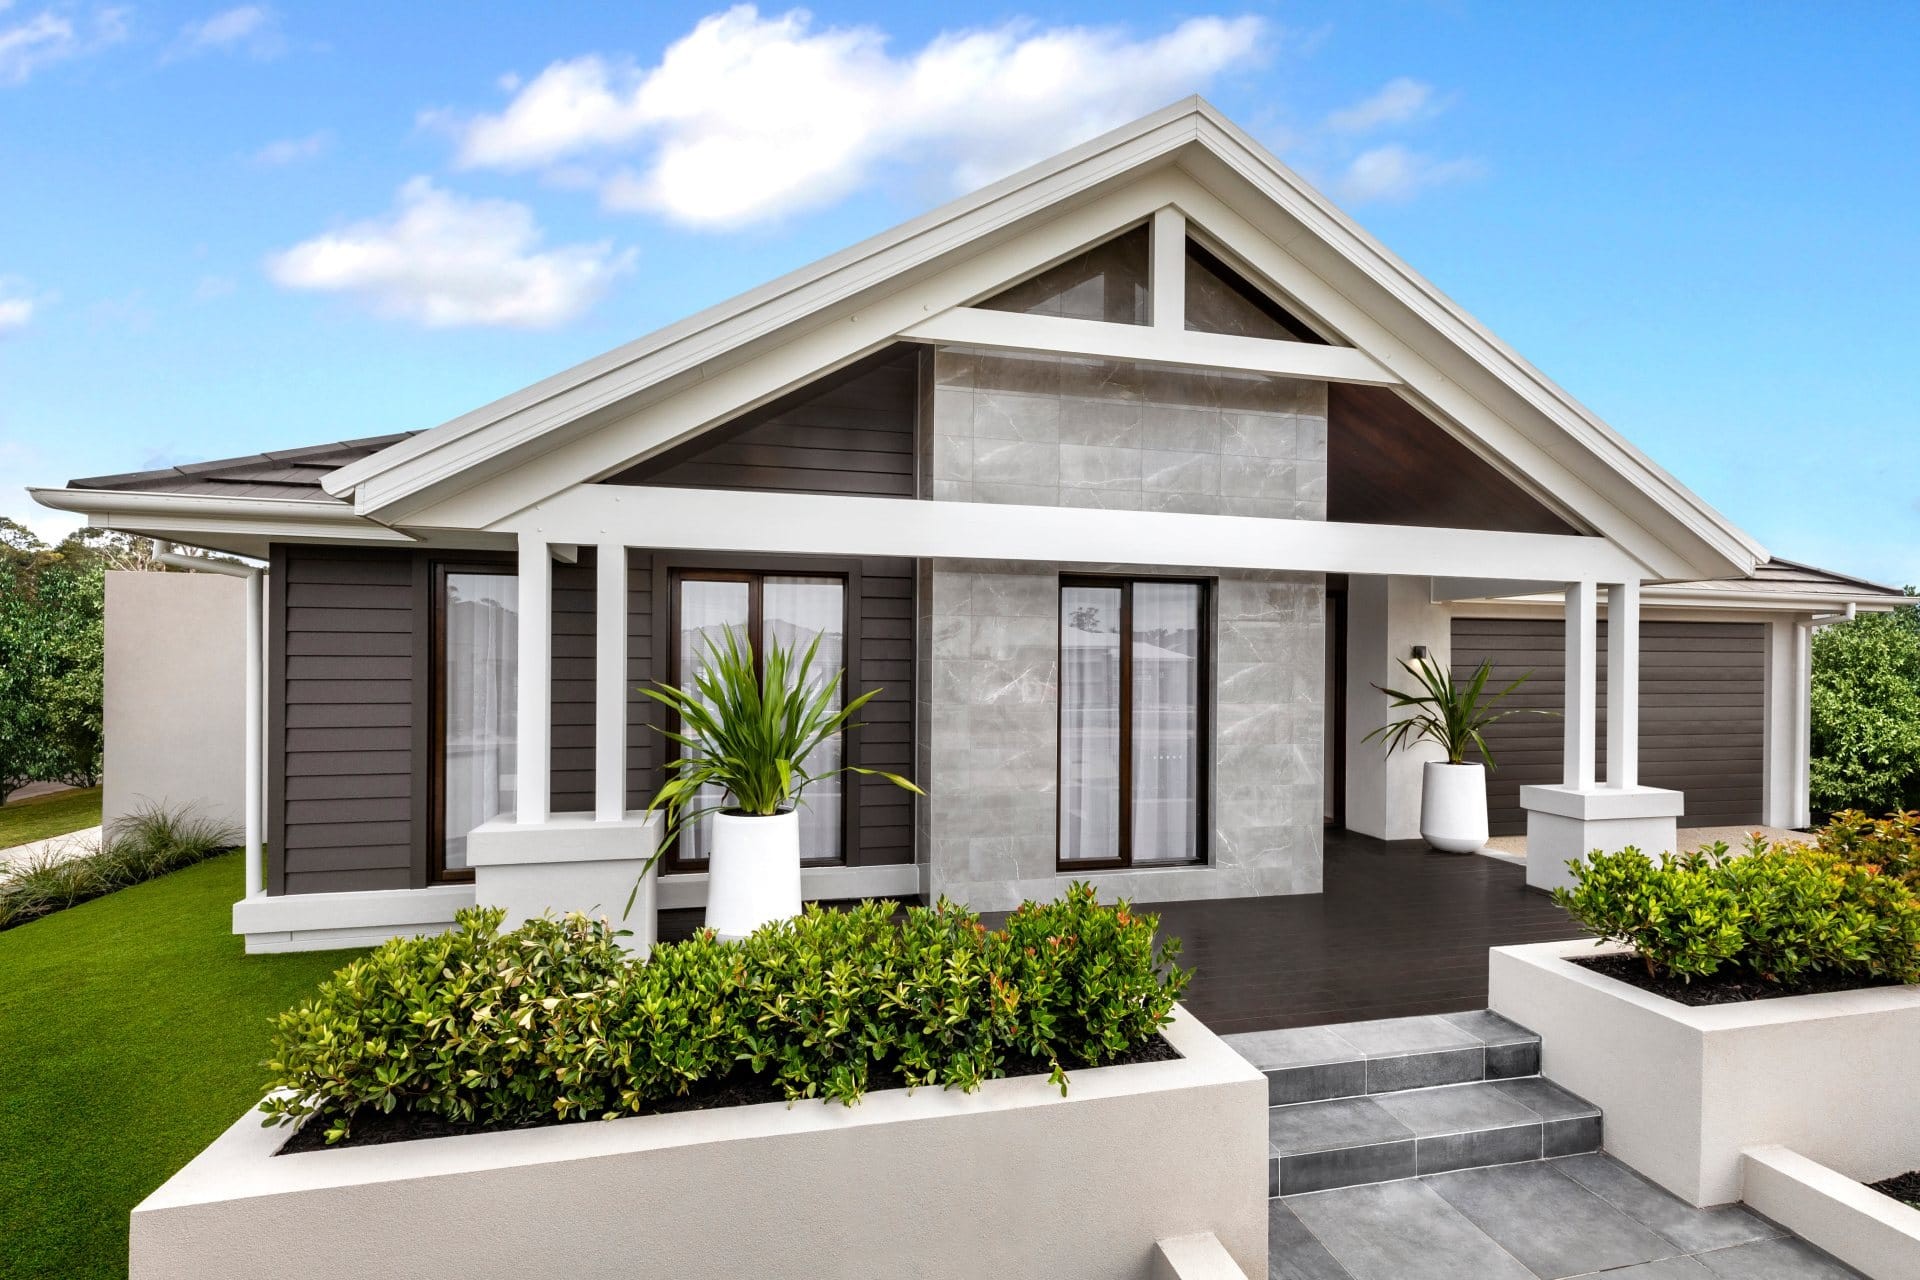 metricon botanica modern home facade design brown grey and white home exterior colours